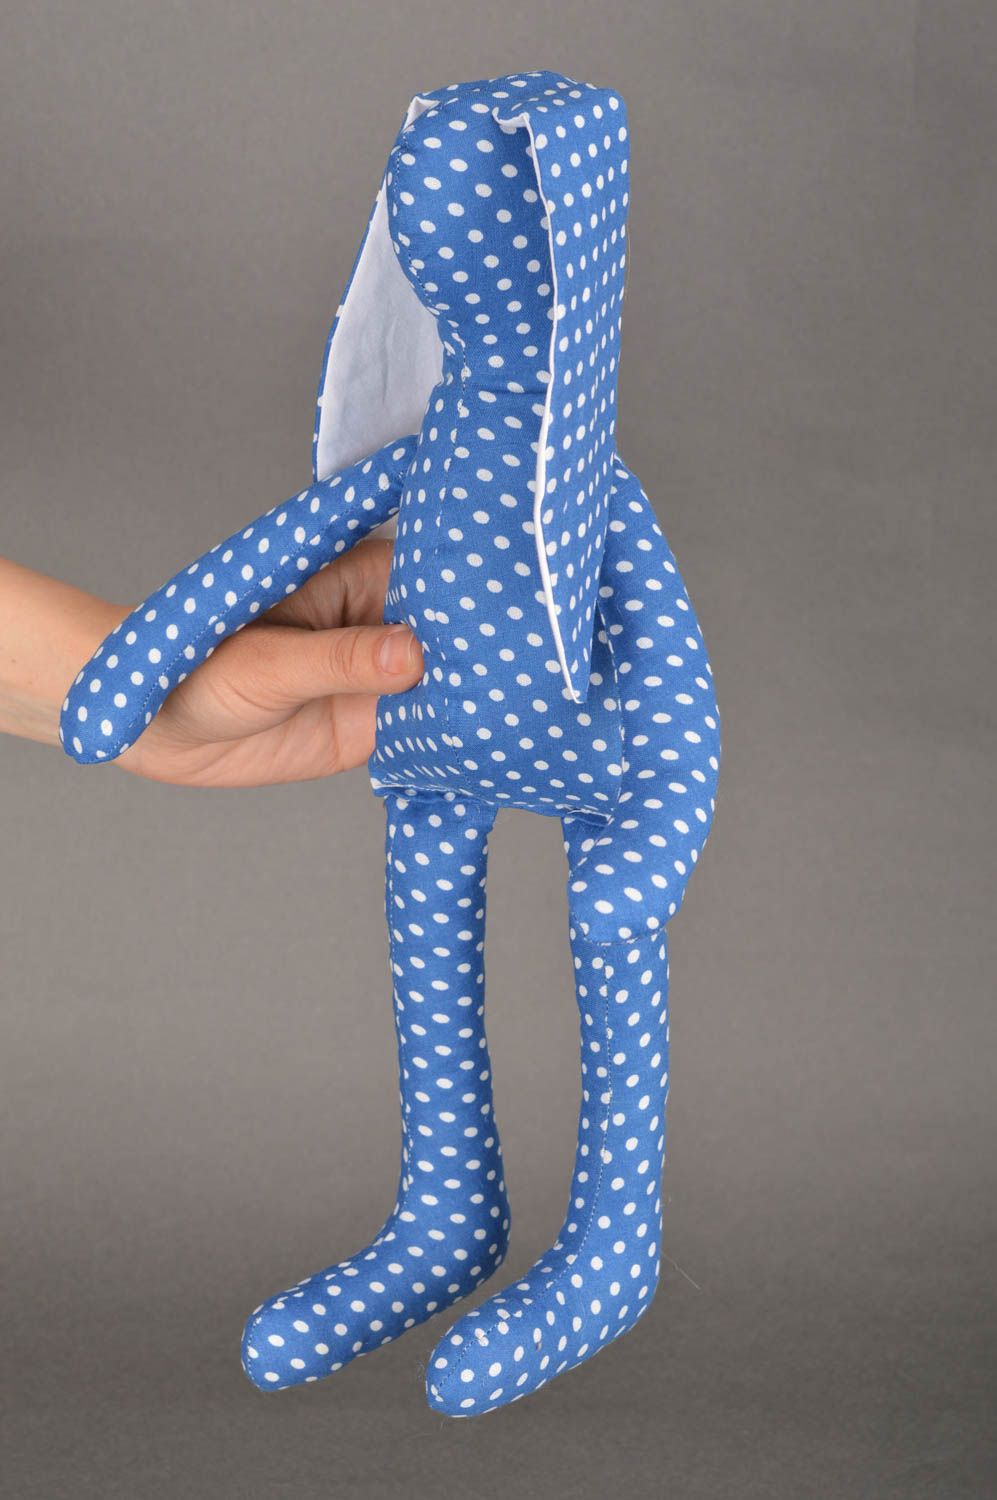 Мягкая игрушка зайка из ткани ручной работы красивая авторская детская фото 3